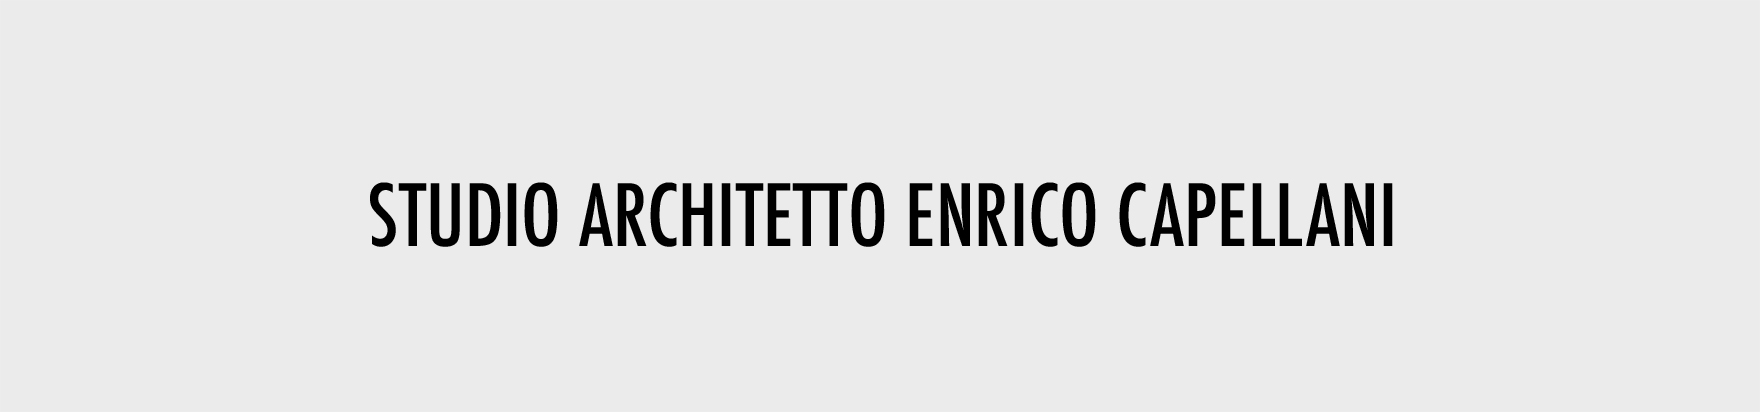 INTERIORS OK-ARCHITETTO ENRICO CAPELLANI